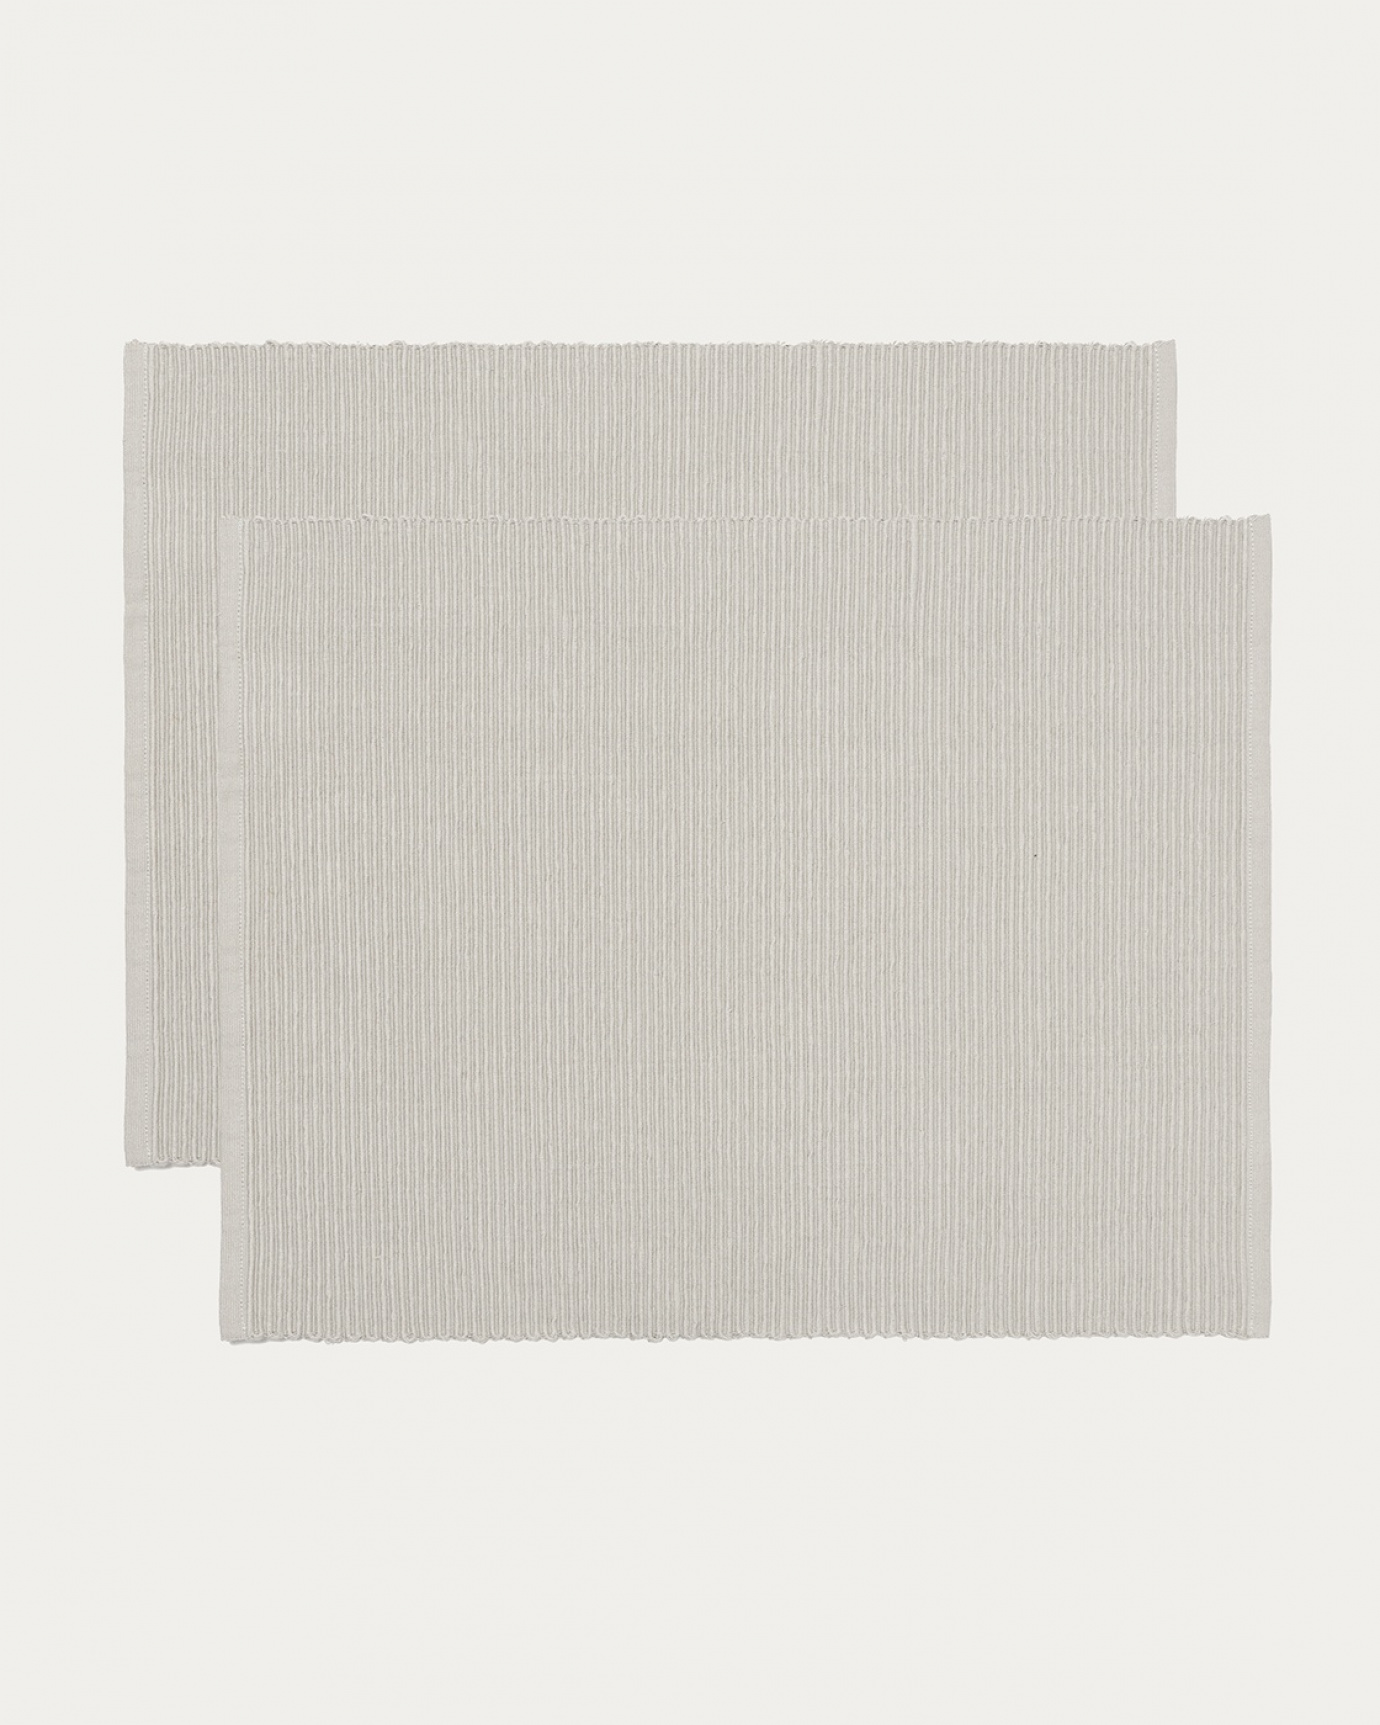 Immagine prodotto grigio chiaro tovaglietta UNI in morbido cotone a costine di qualità di LINUM DESIGN. Dimensioni 35x46 cm e venduto in 2-pezzi.